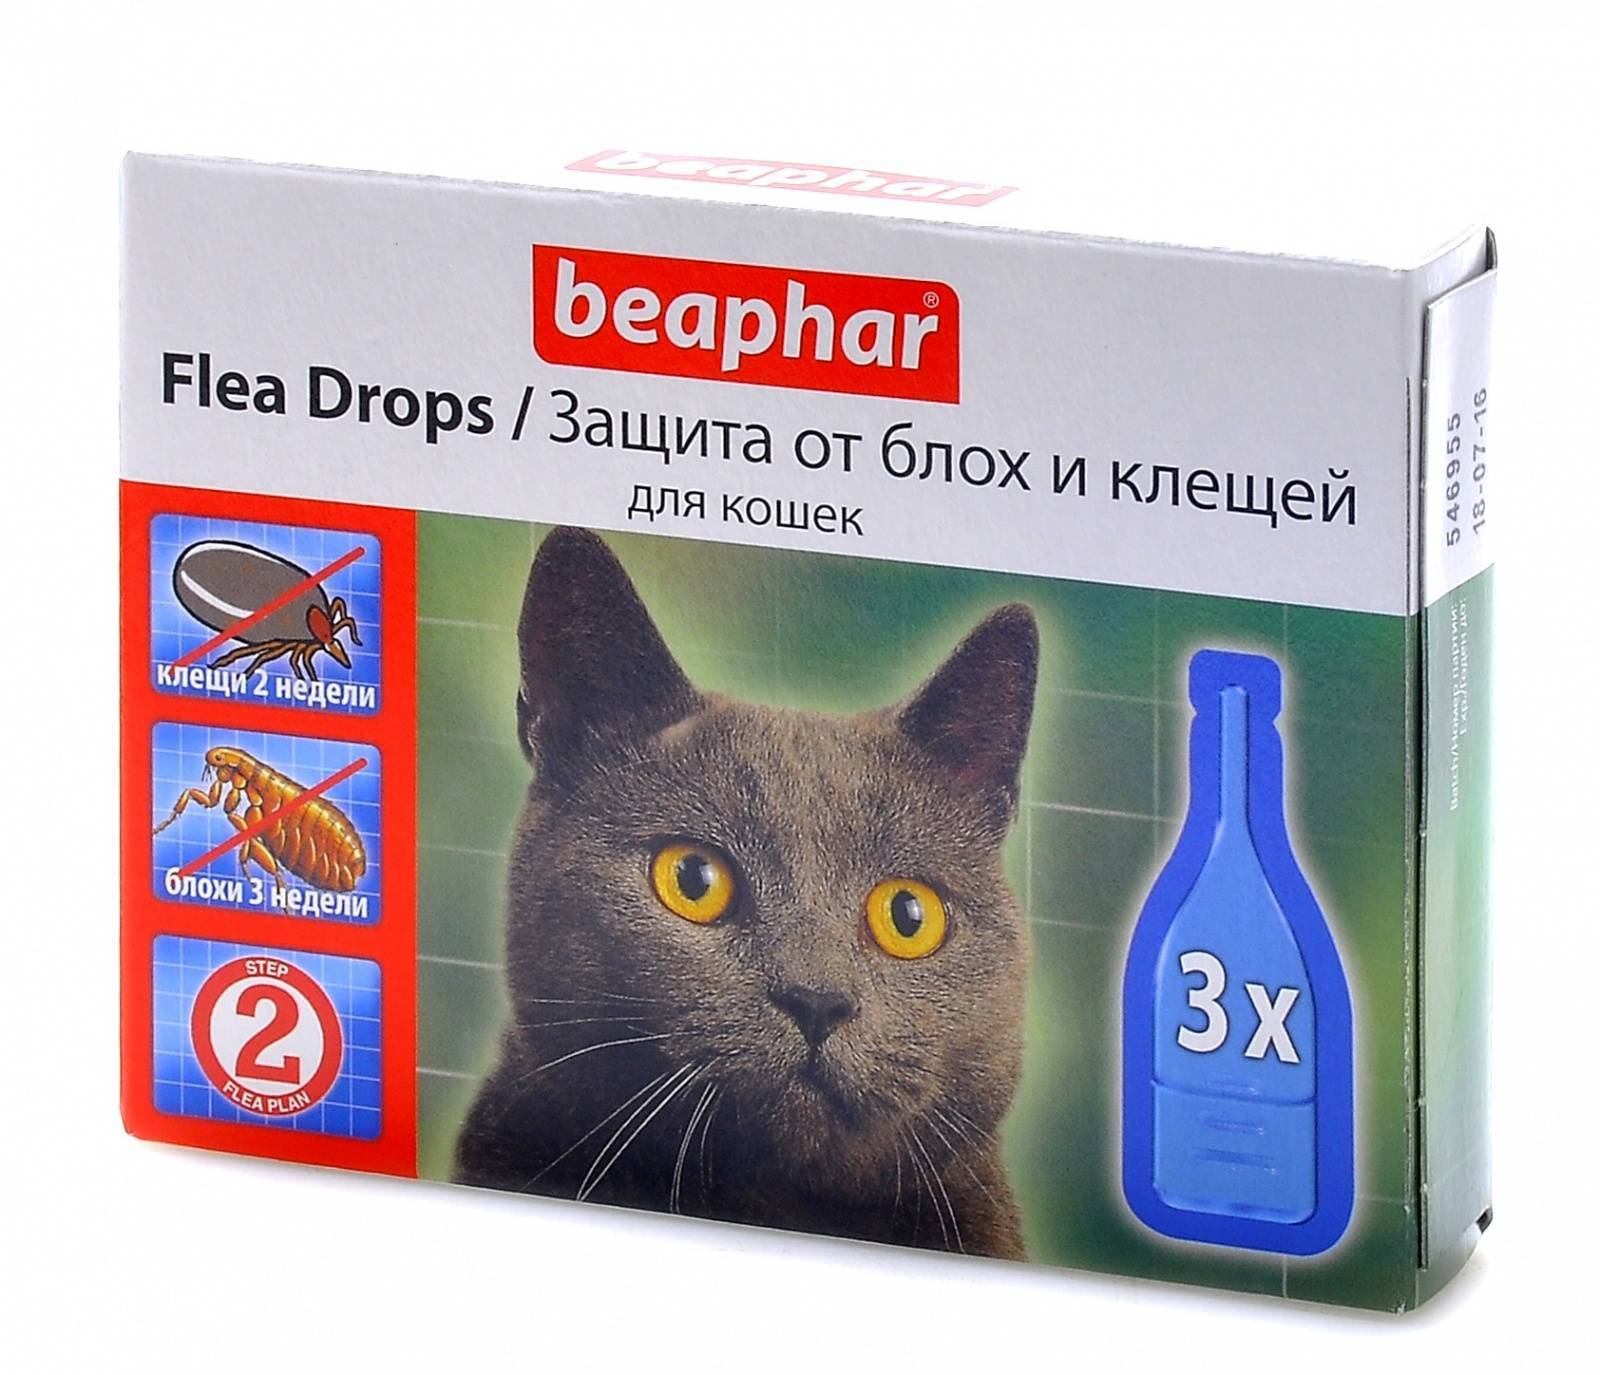 Лучшее средство от блох для кошек - препараты, ошейники, народные средства - kotiko.ru